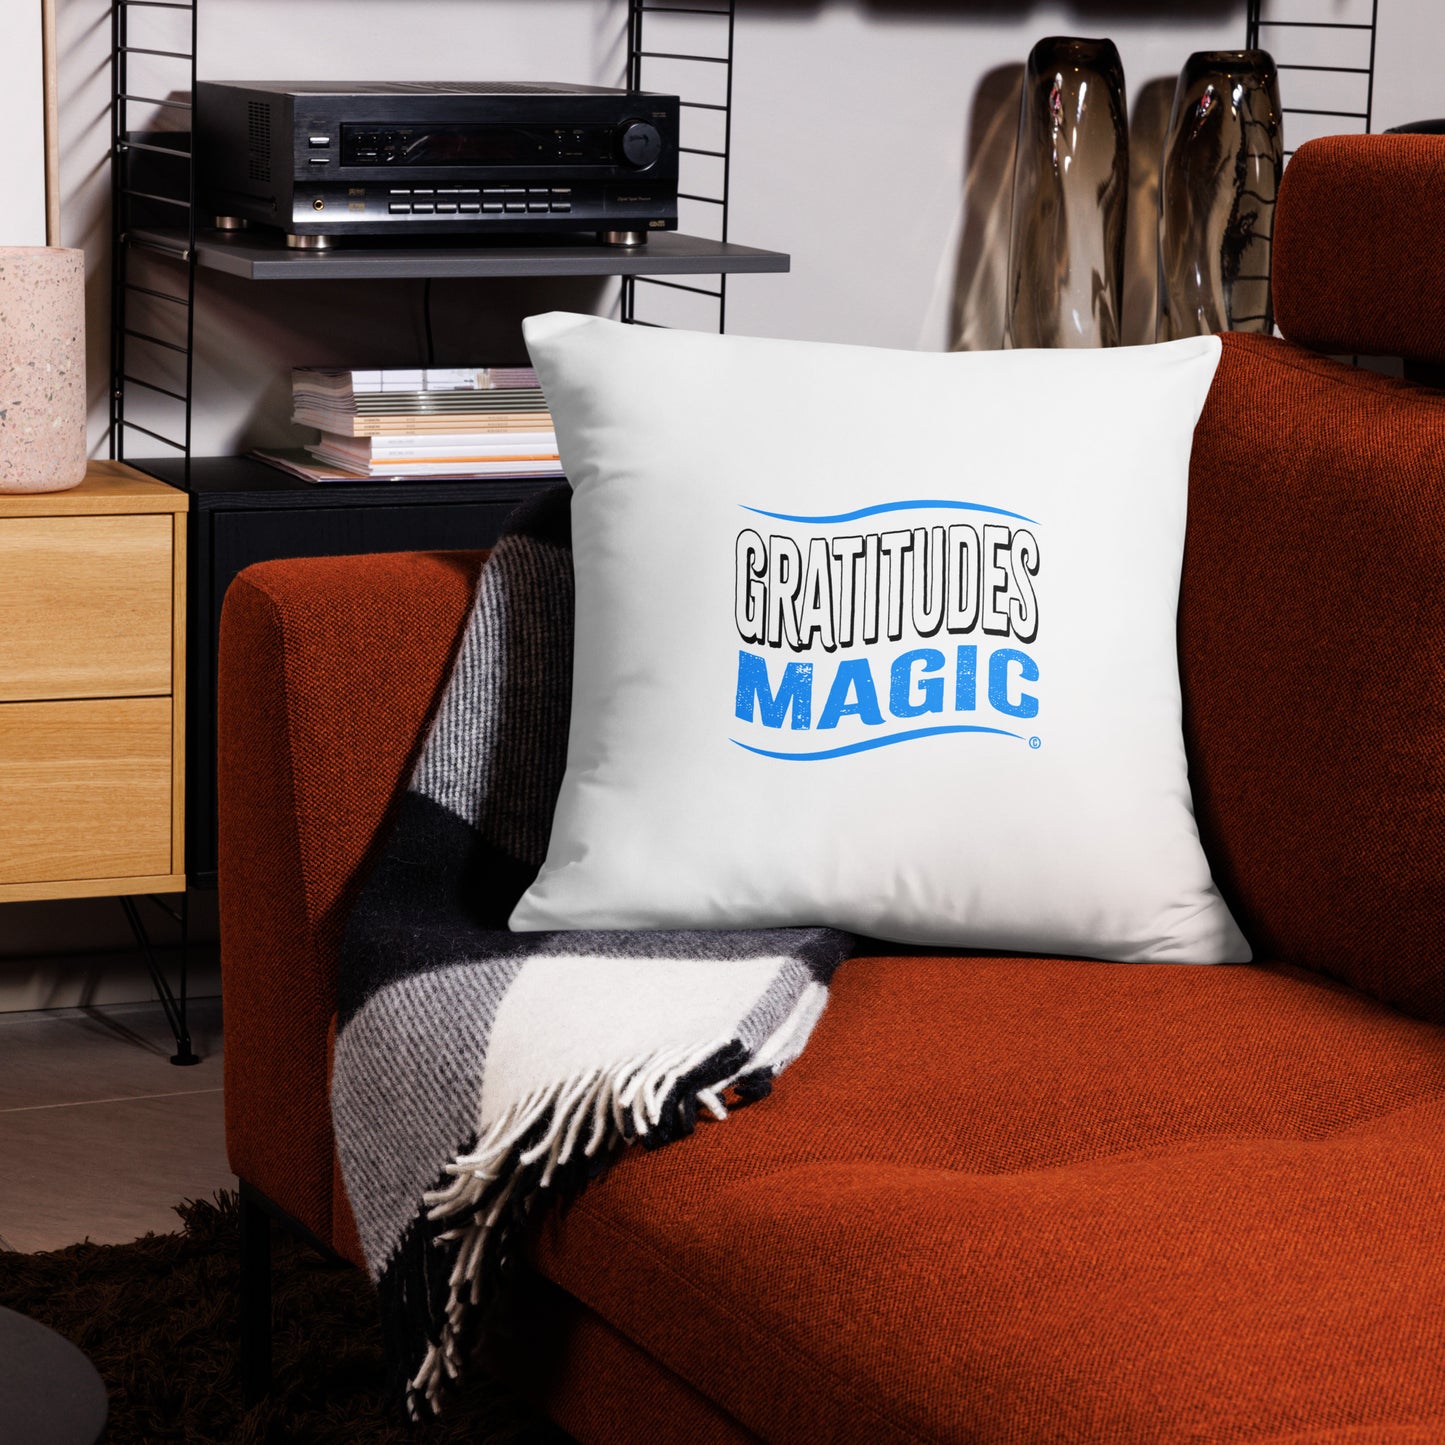 Gratitudes Magic Basic Pillows